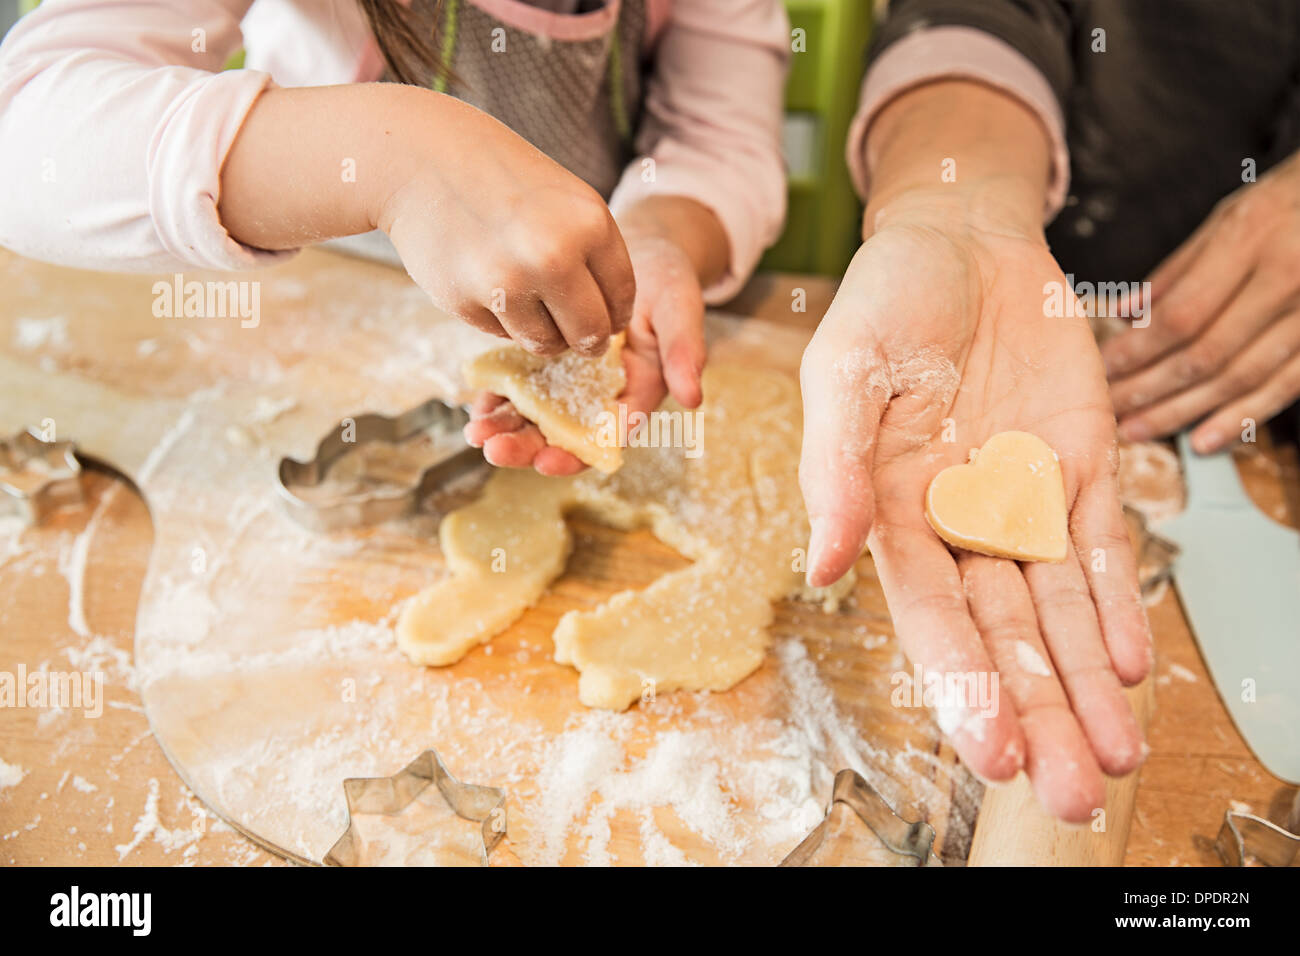 Mère et fille baking in kitchen Banque D'Images